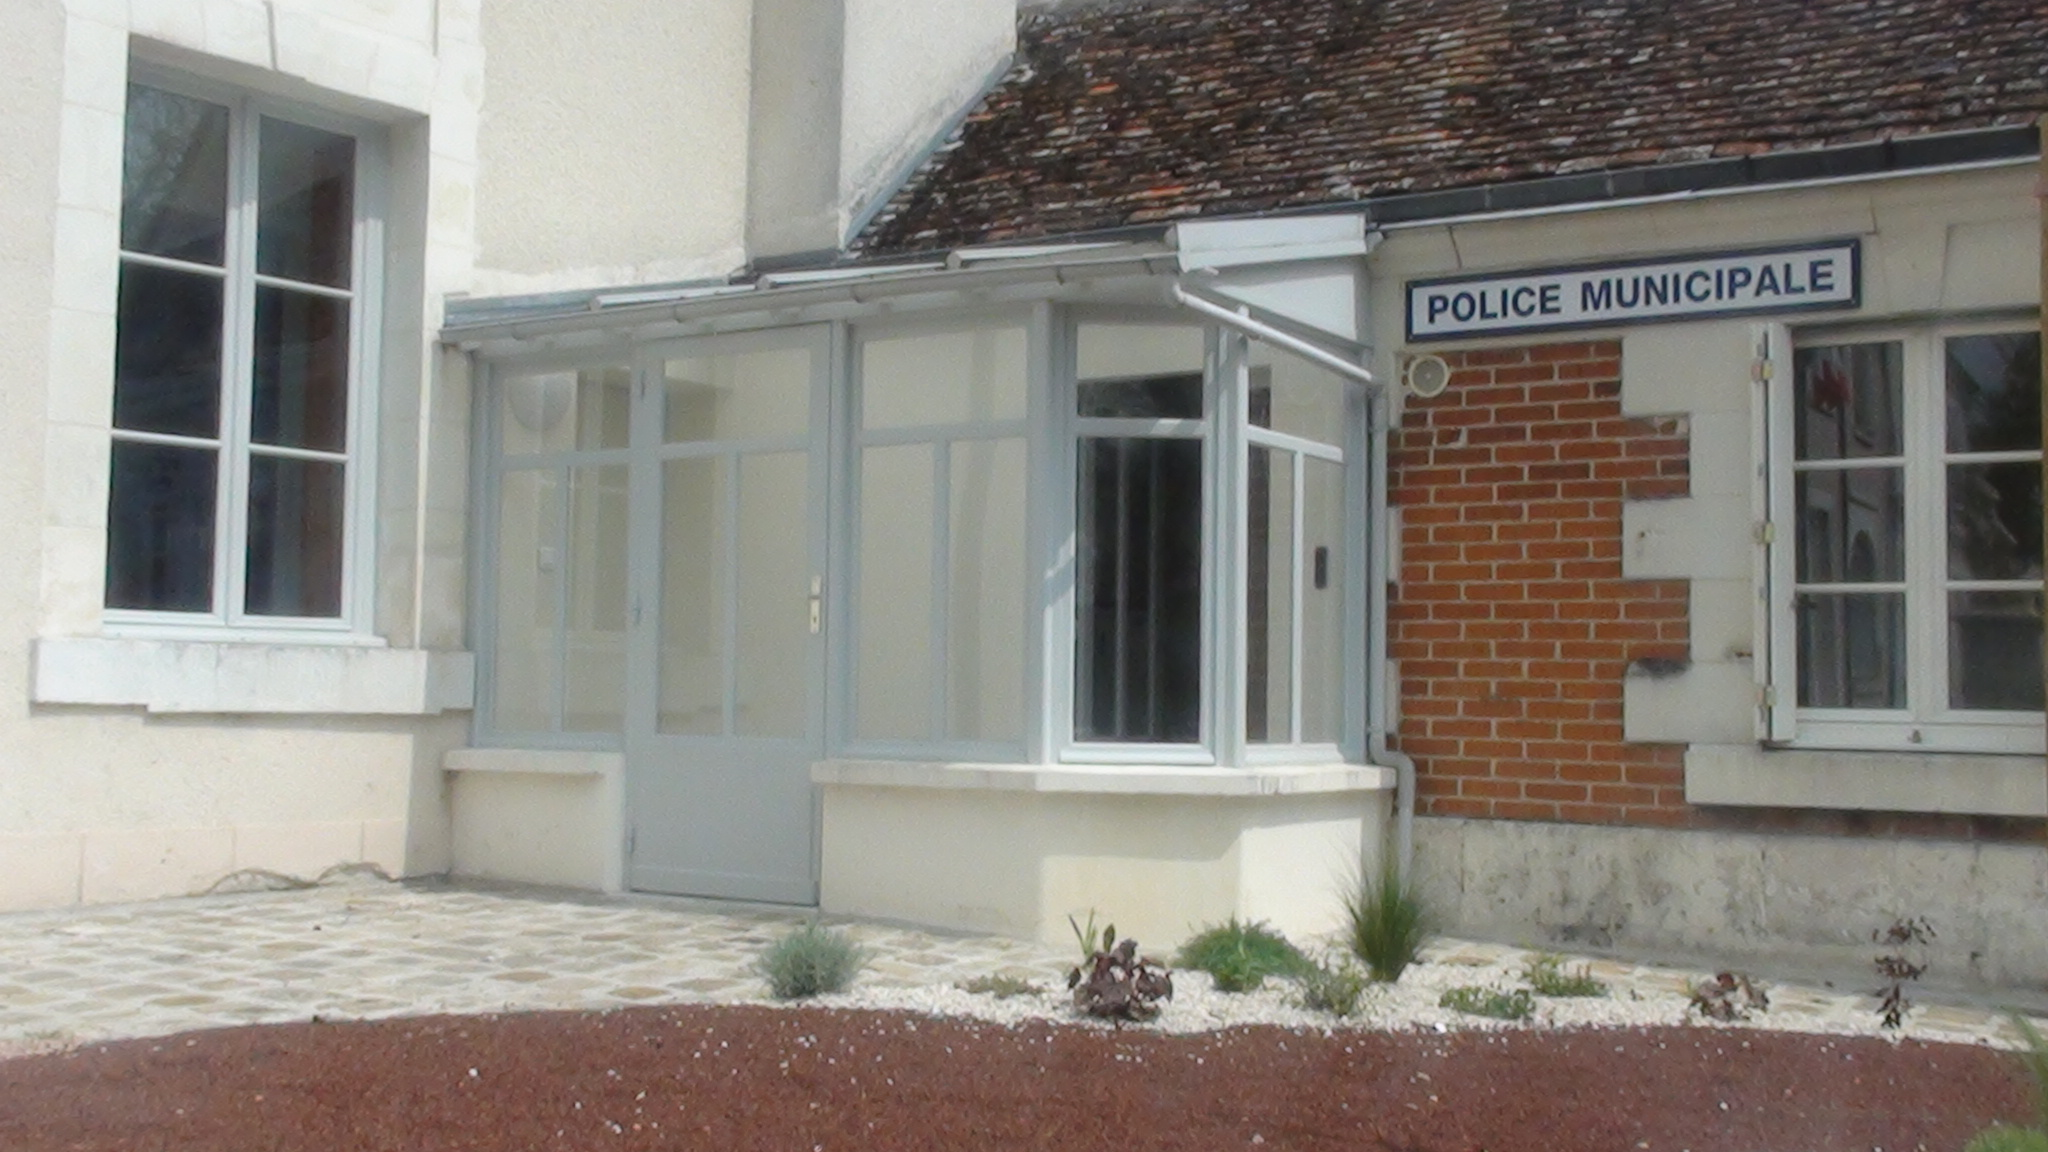 Police municipale de Selles-sur-Cher